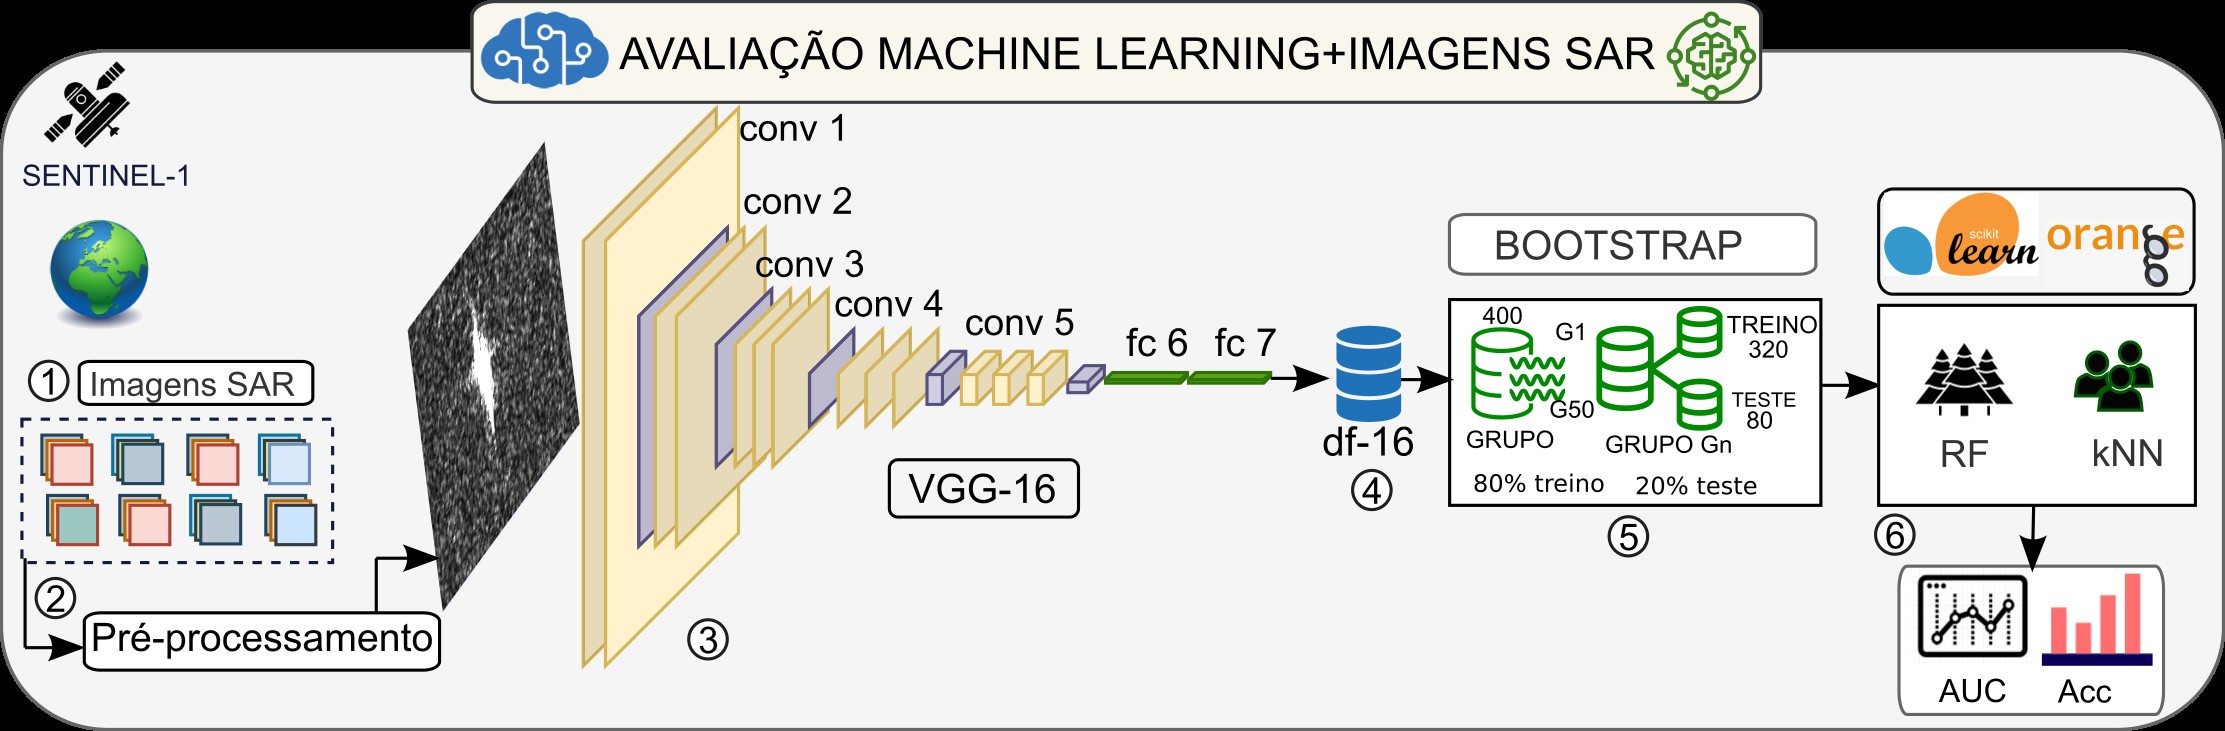 Avaliação de Algoritmos de Machine Learning na Classificação de Alvos Marítimos em Imagens SAR